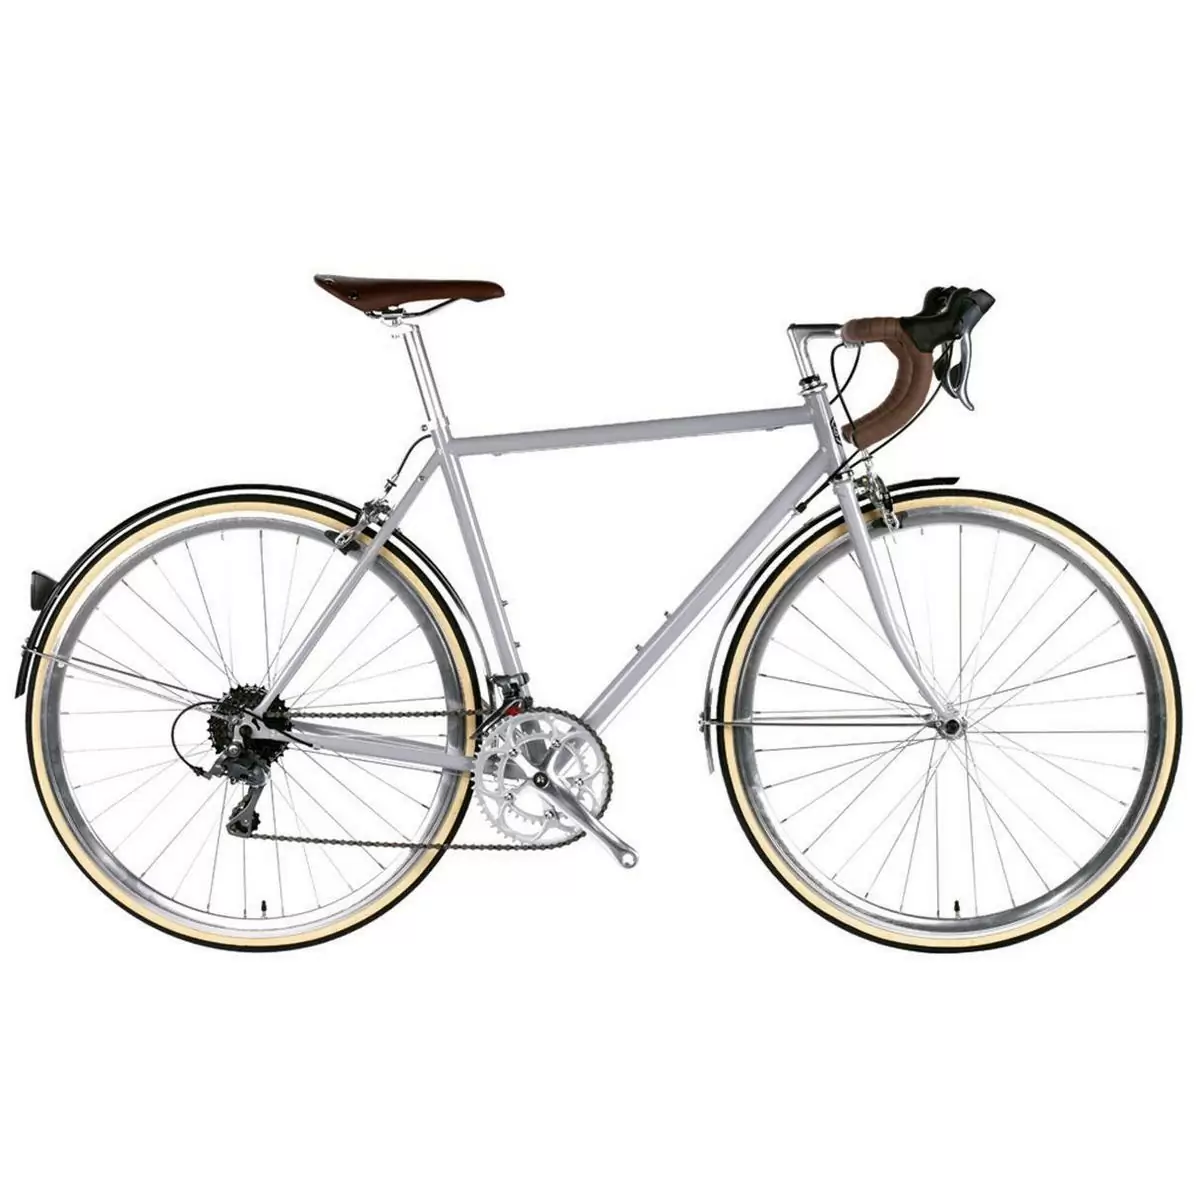 Bicicleta urbana TROY 16spd Highland prata média 54cm - image